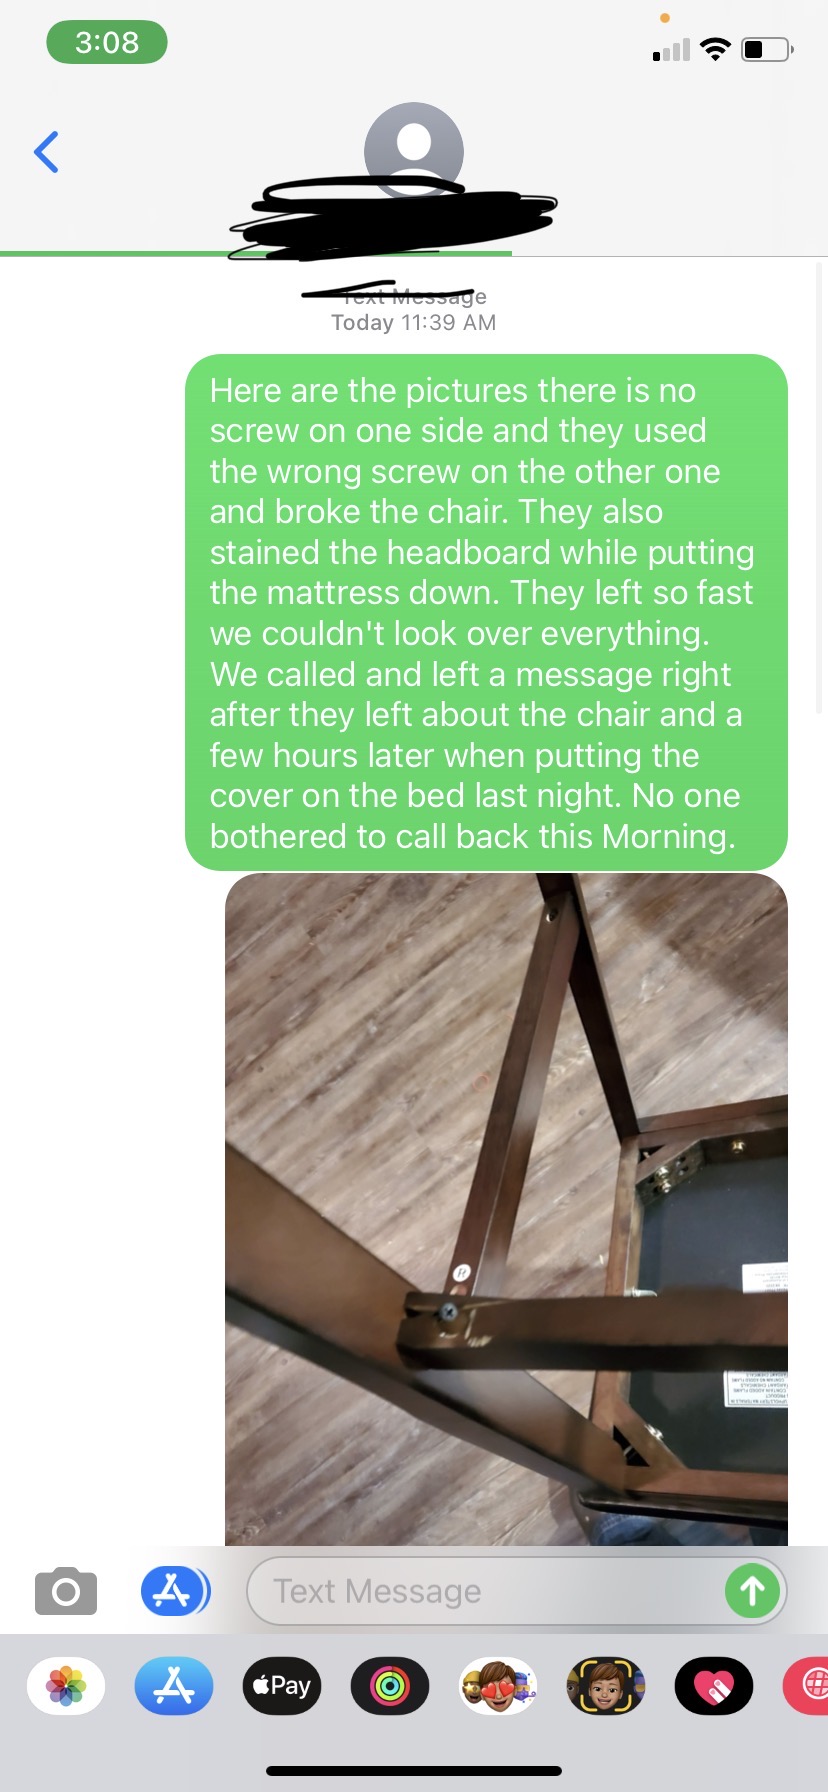 text sent regarding broken chair